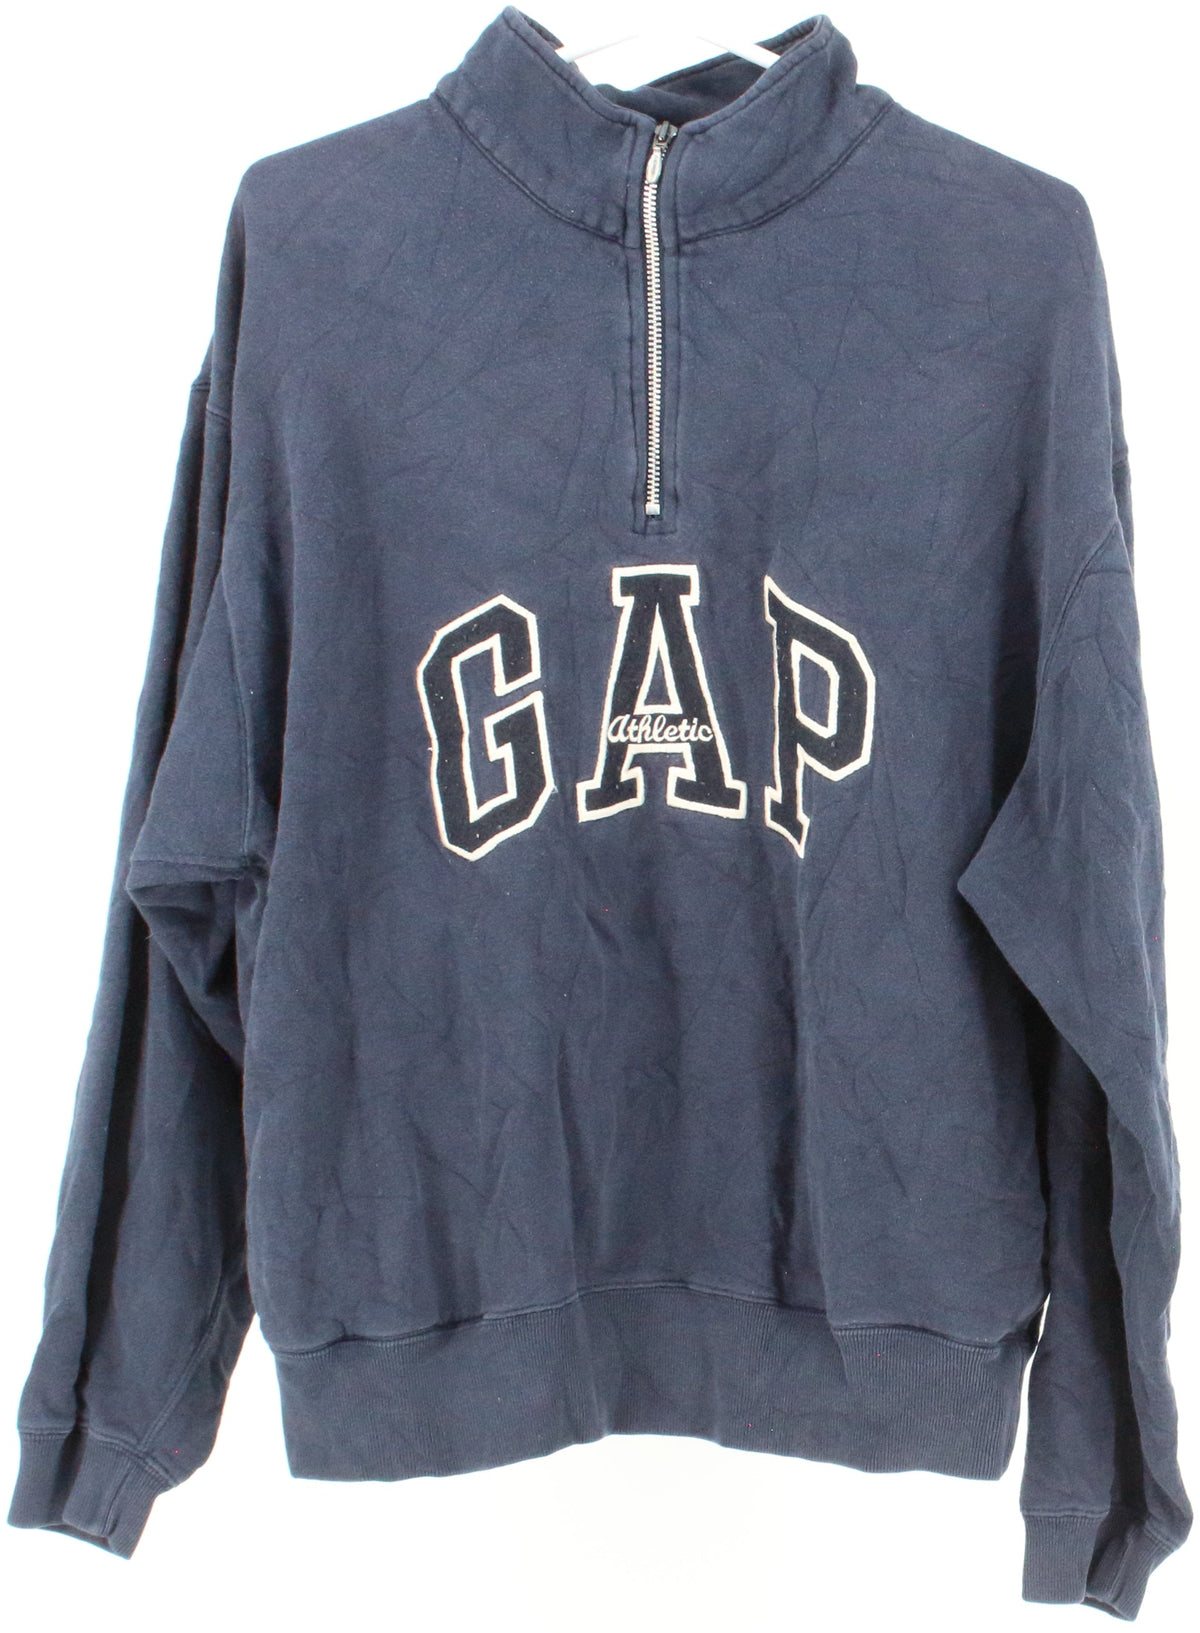 Gap Navy Blue Half Zip Sweatshirt